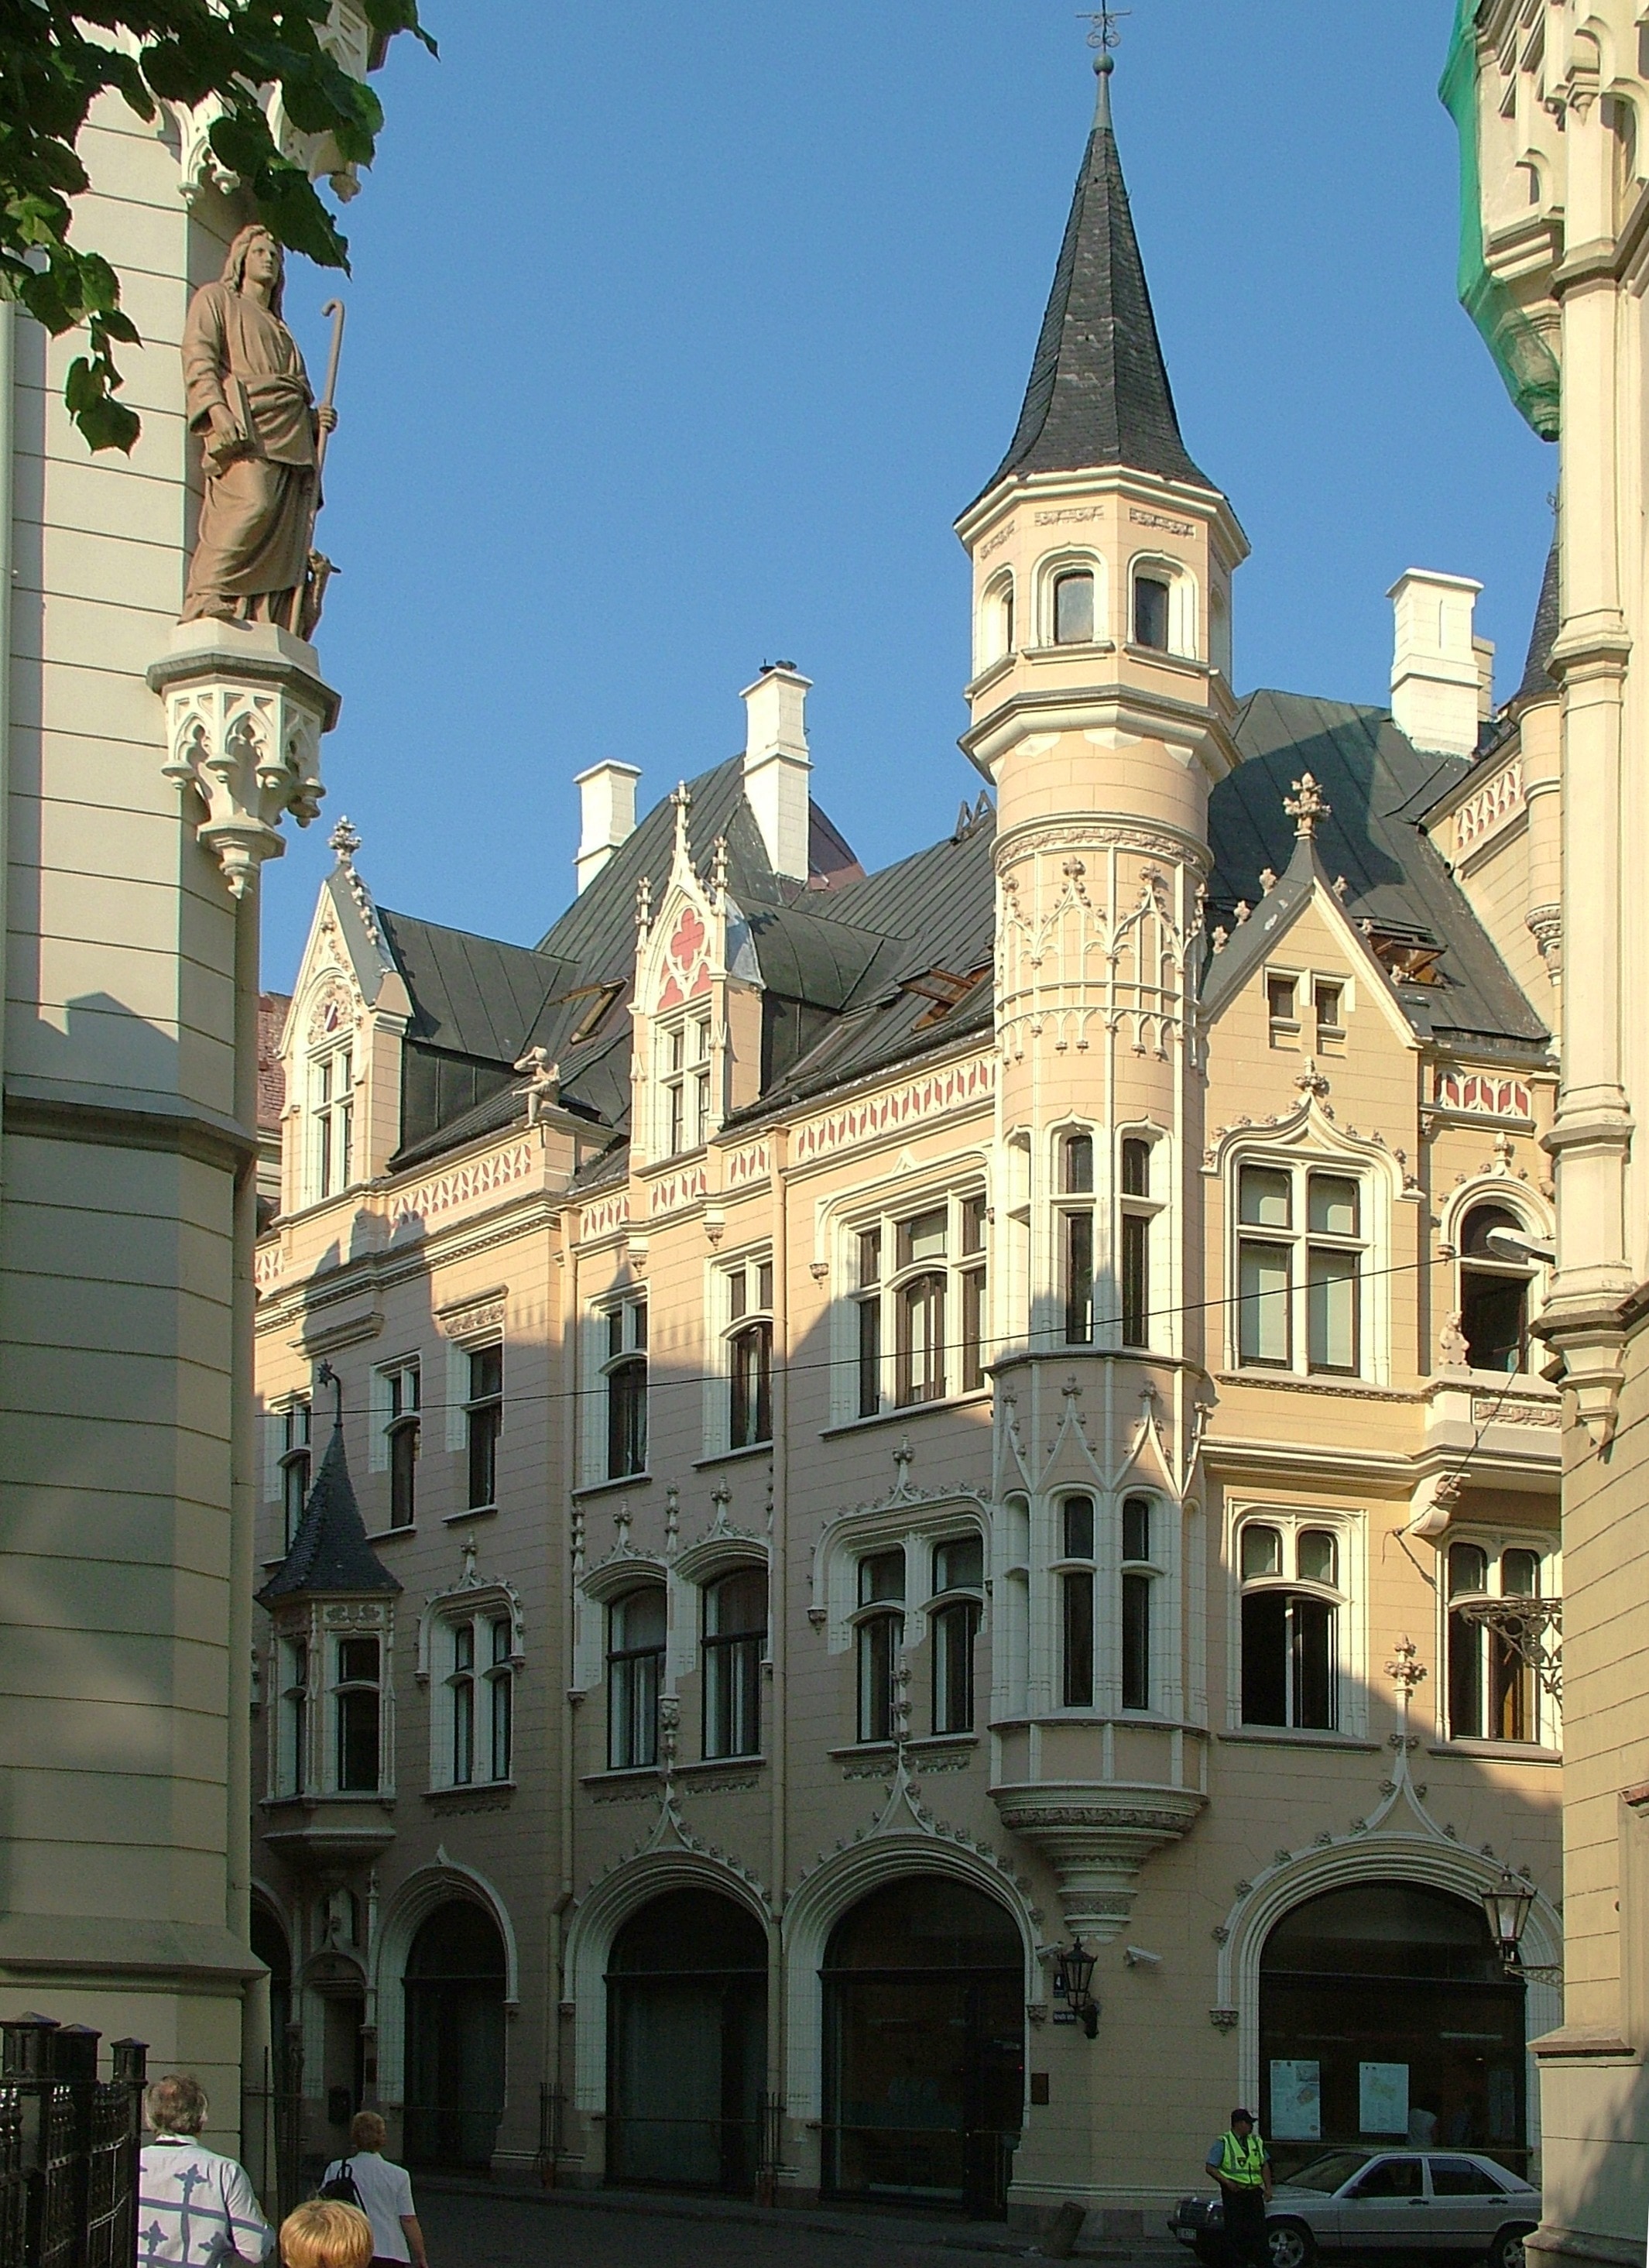 Building, Latvia, Riga, architecture, building exterior